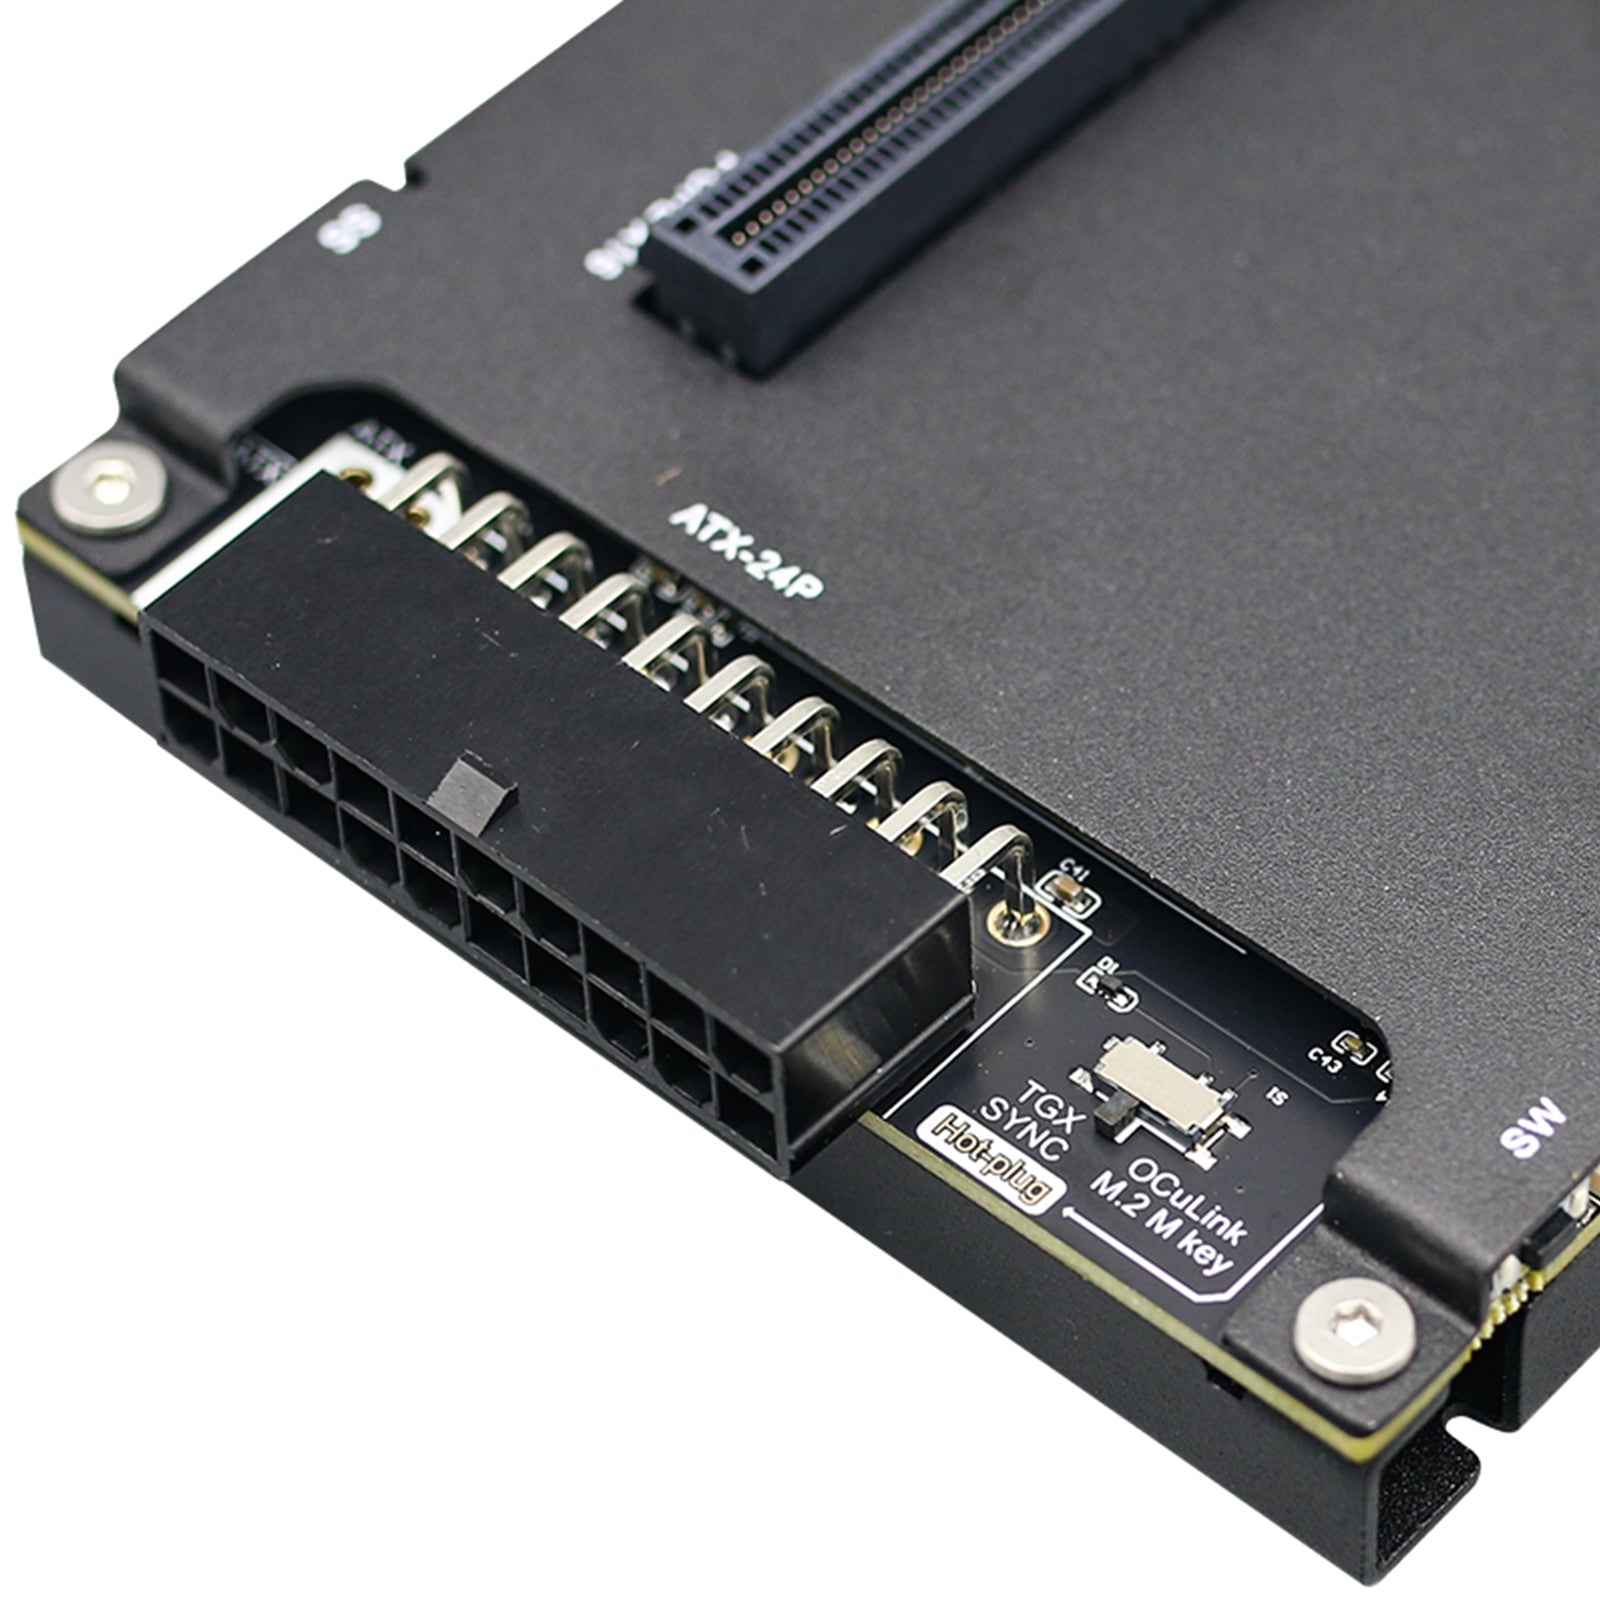 Chip de alta compatibilidad OCuP4v2 PCI-E4.0 estación de expansión de tarjeta gráfica externa